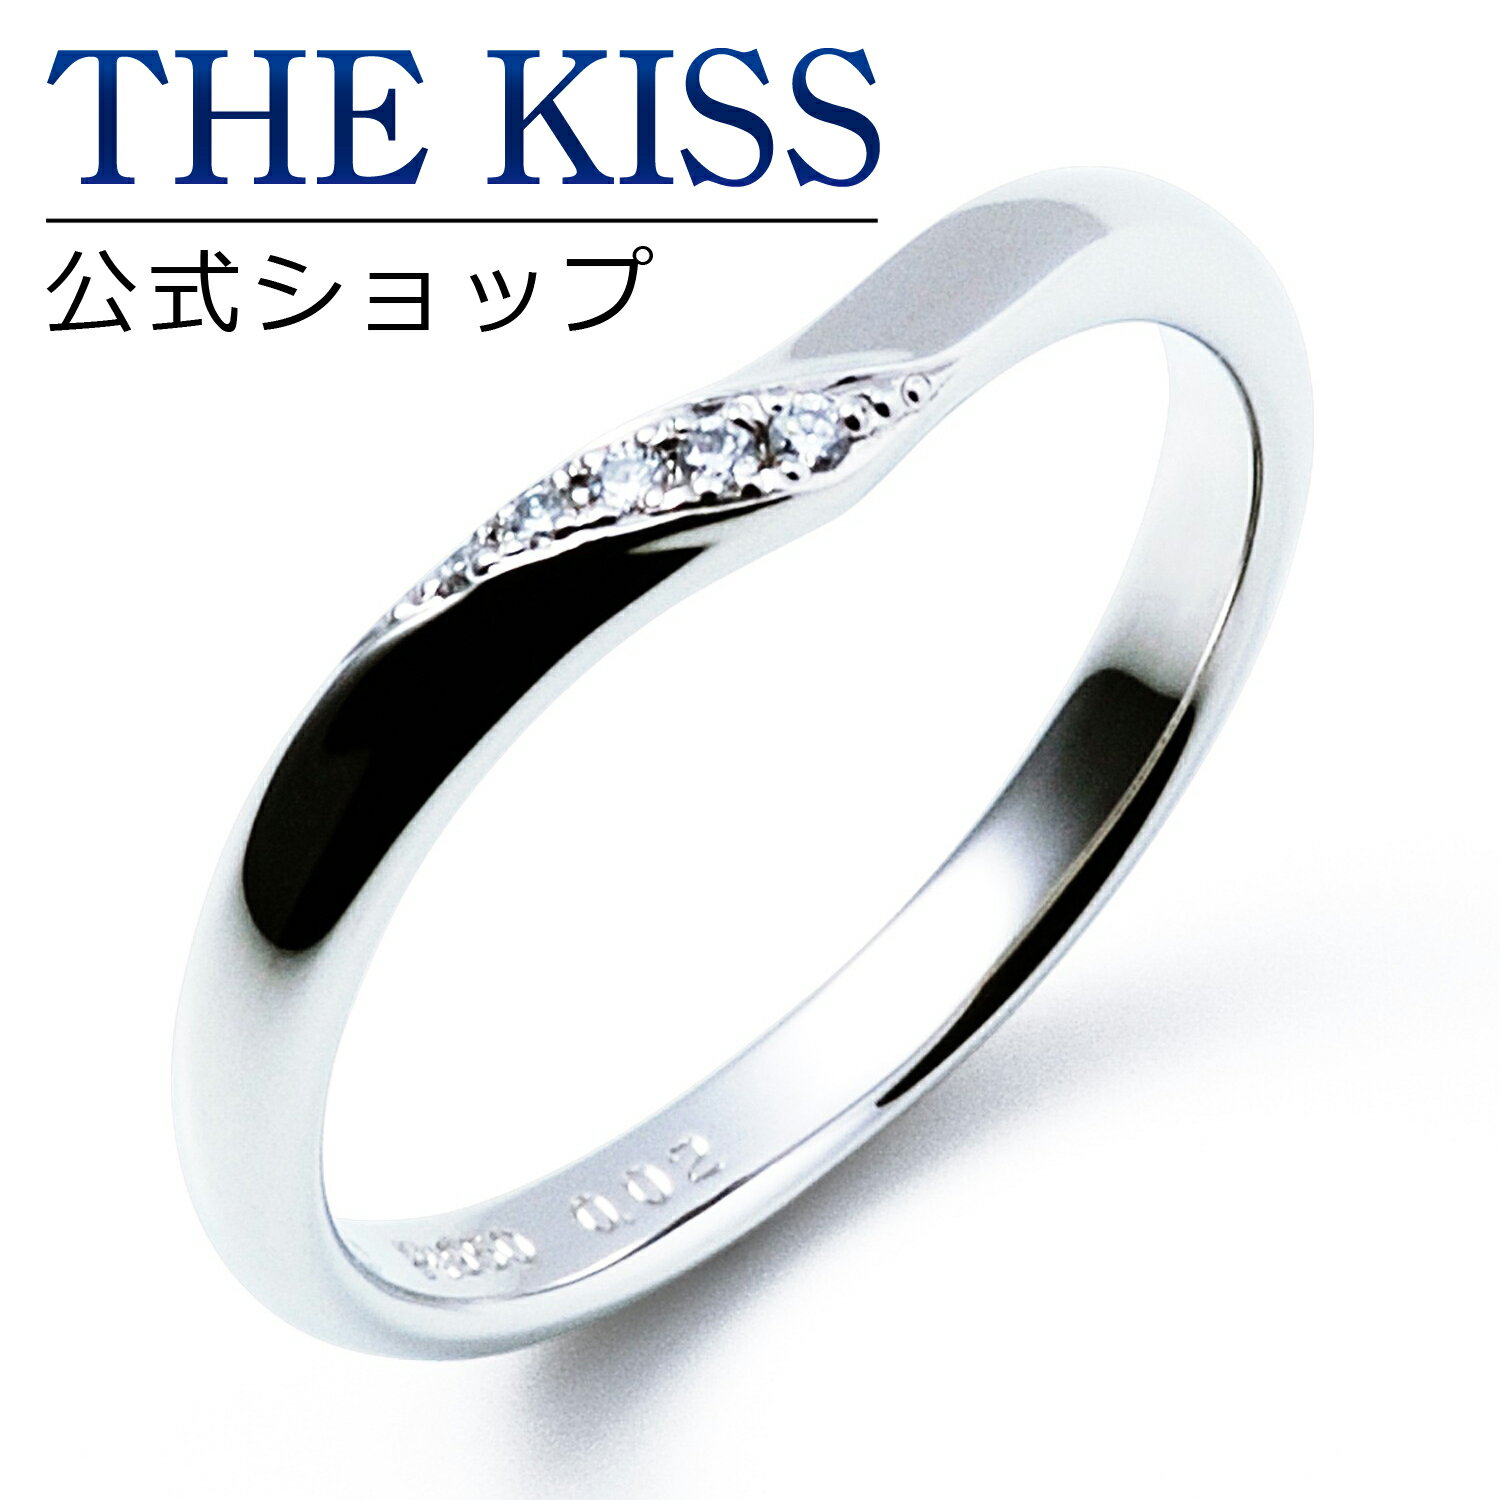 【ラッピング無料】【刻印無料】【THE KISS Anniversary】 THE KISS 公式ショップ Pt950 プラチナ マリッジ リング 結婚指輪 ペアリング （ レディース 単品 ） カップル 人気 ジュエリーブランド THEKISS ザキッス 指輪 7061116061 シンプル 女性 ブライダル